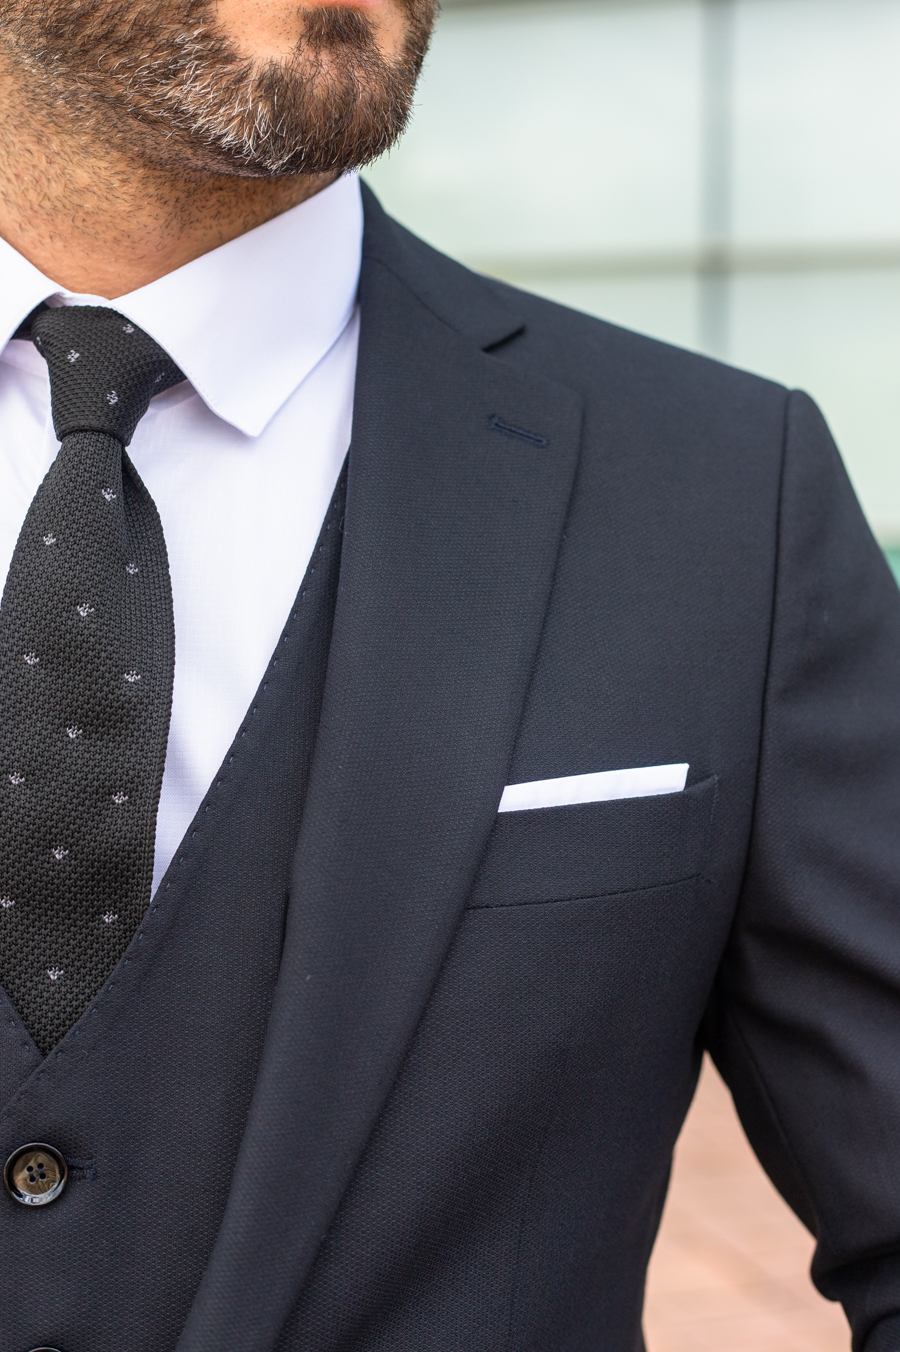 Приталенный мужской костюм-тройка чернильного цвета. Арт.: 2944 – купить вмагазине мужской одежды Smartcasuals